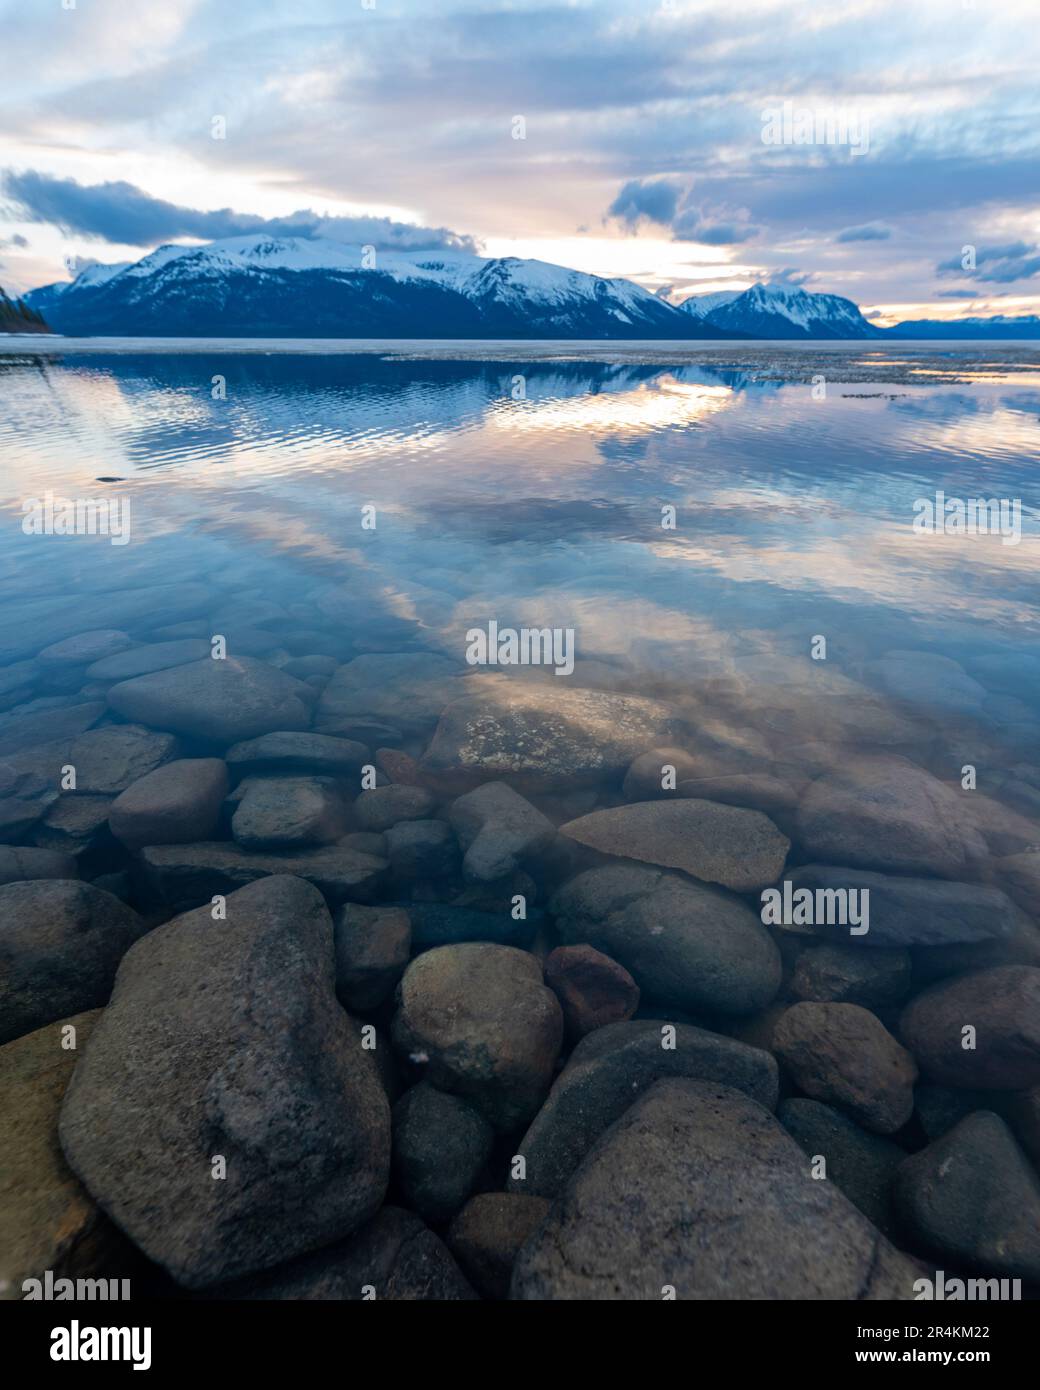 Tramonto roccioso sulla riva del lago ad Atlin, British Columbia durante la primavera. Montagne innevate che si riflettono nella calma acqua del lago sottostante con un cielo spettacolare. Foto Stock